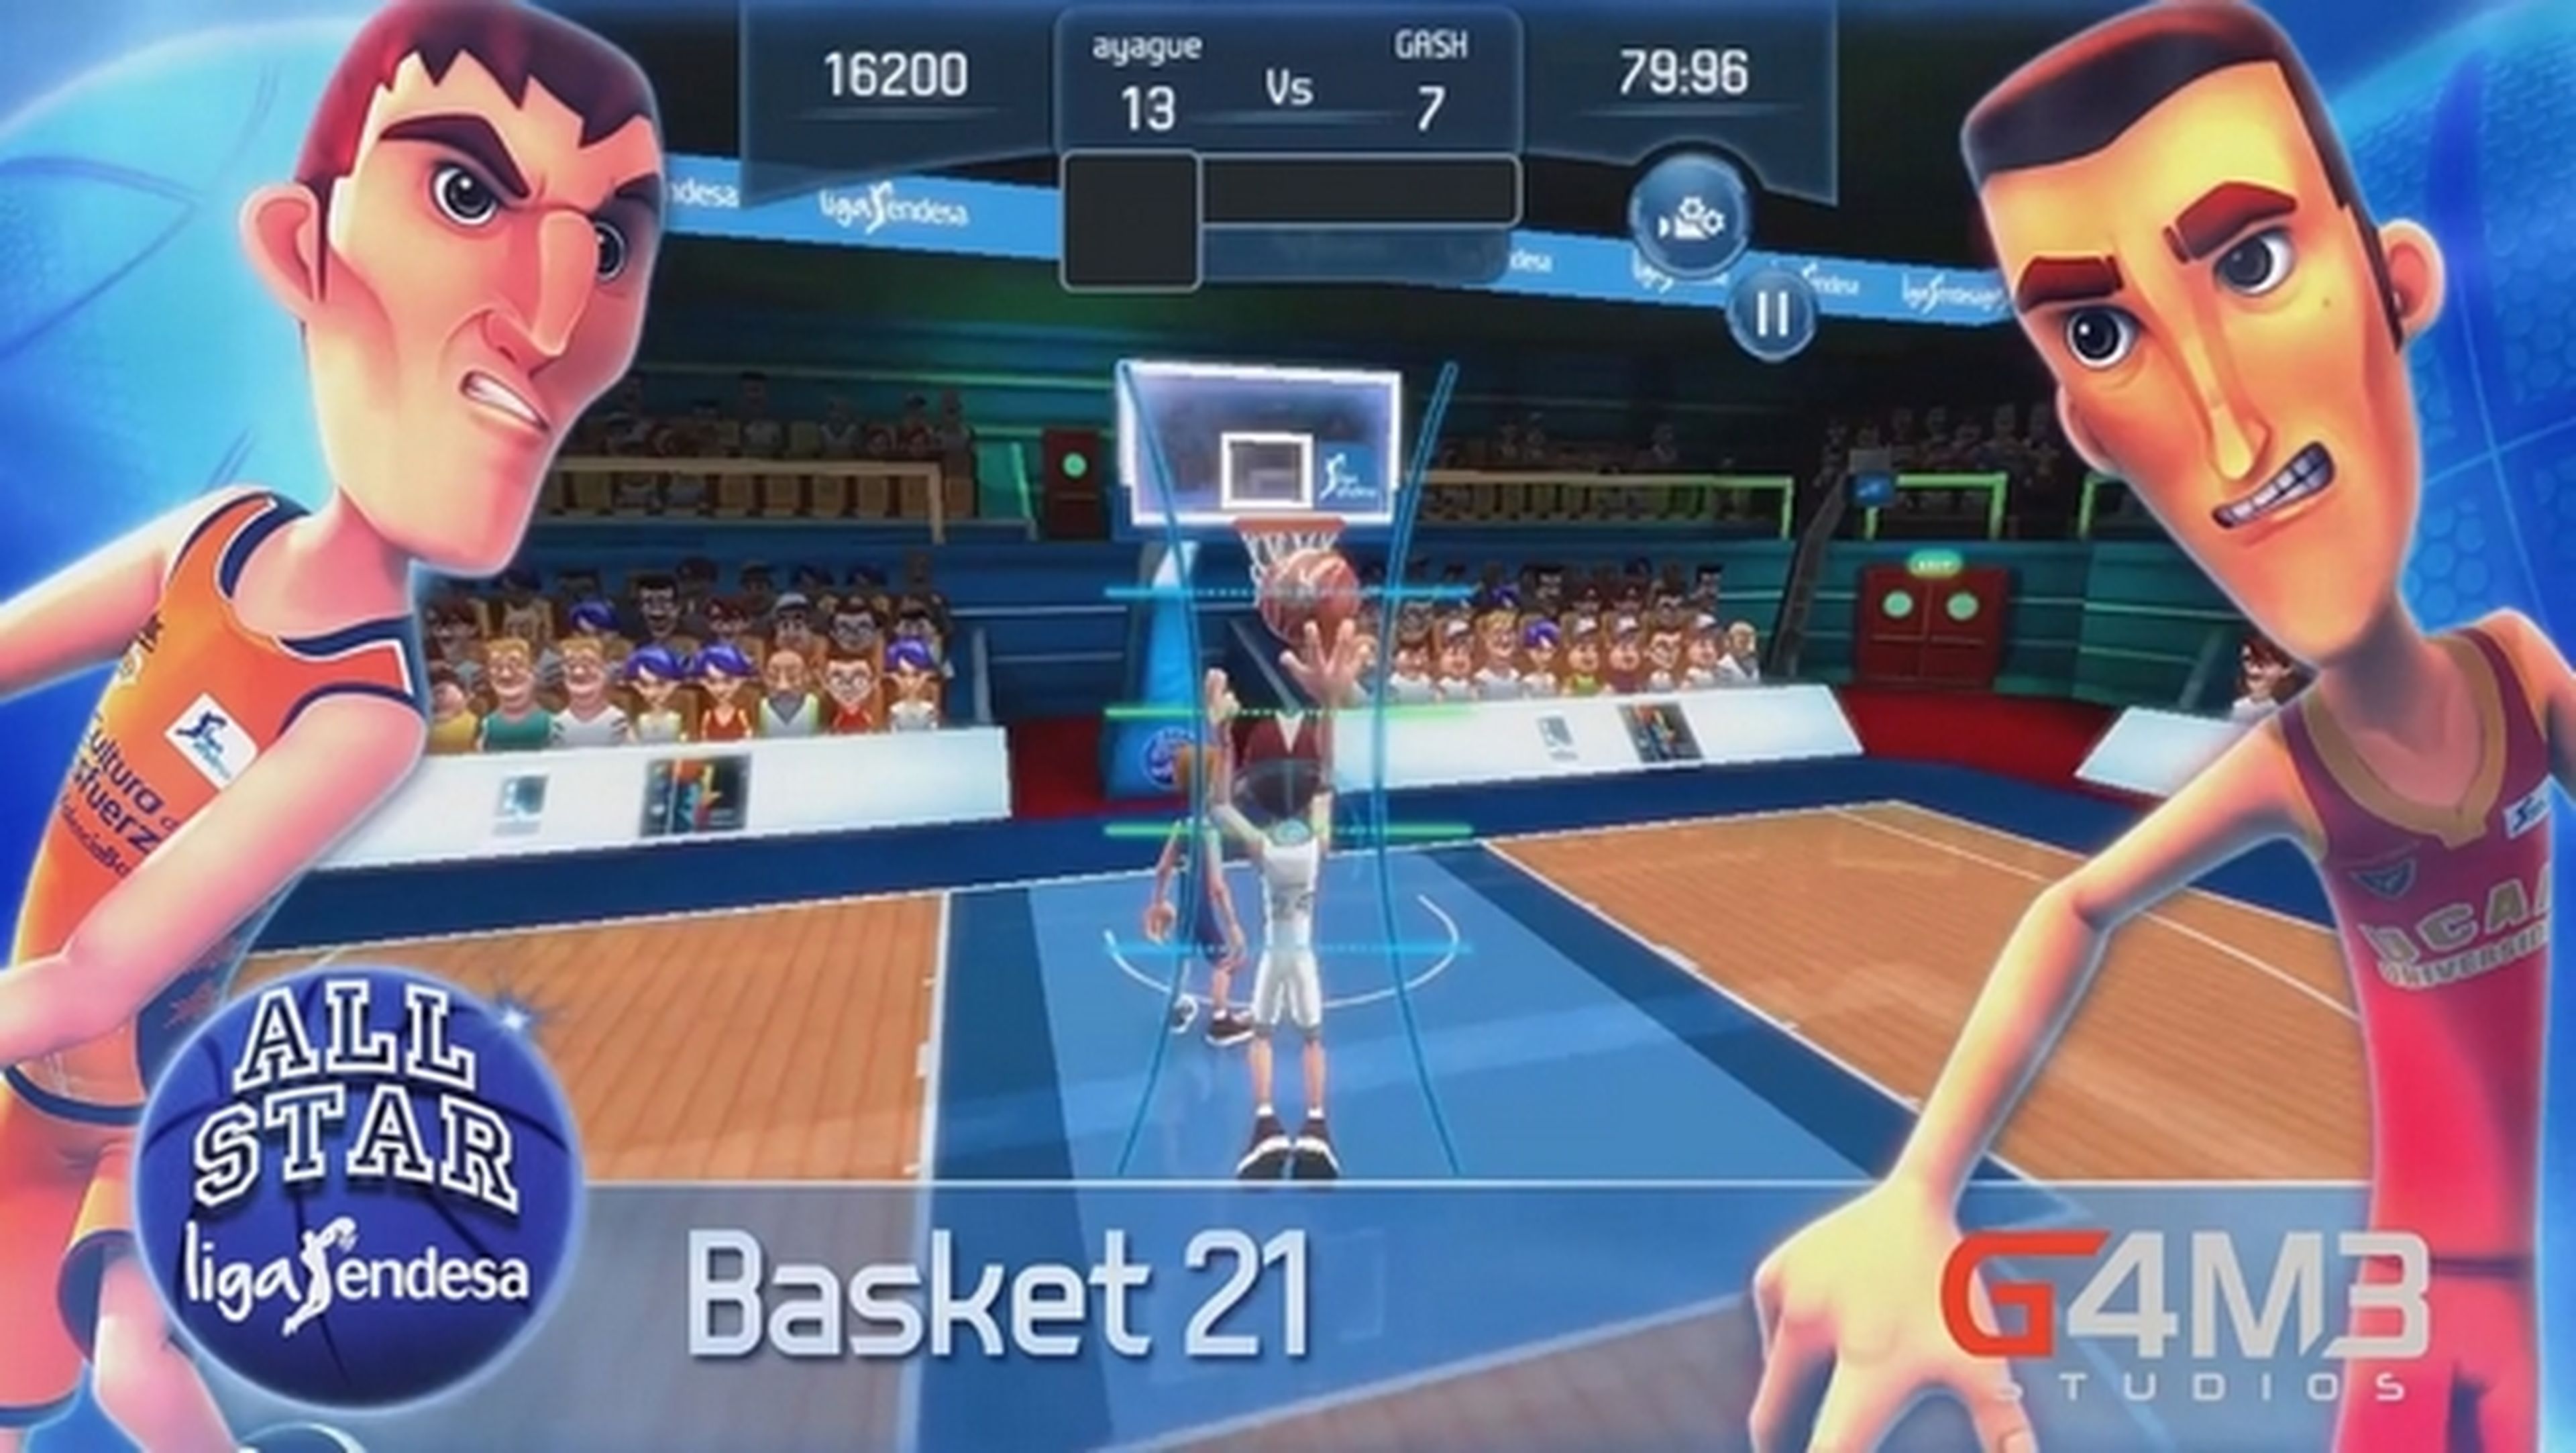 All Star Liga Endesa, el juego oficial de basket para móvil.